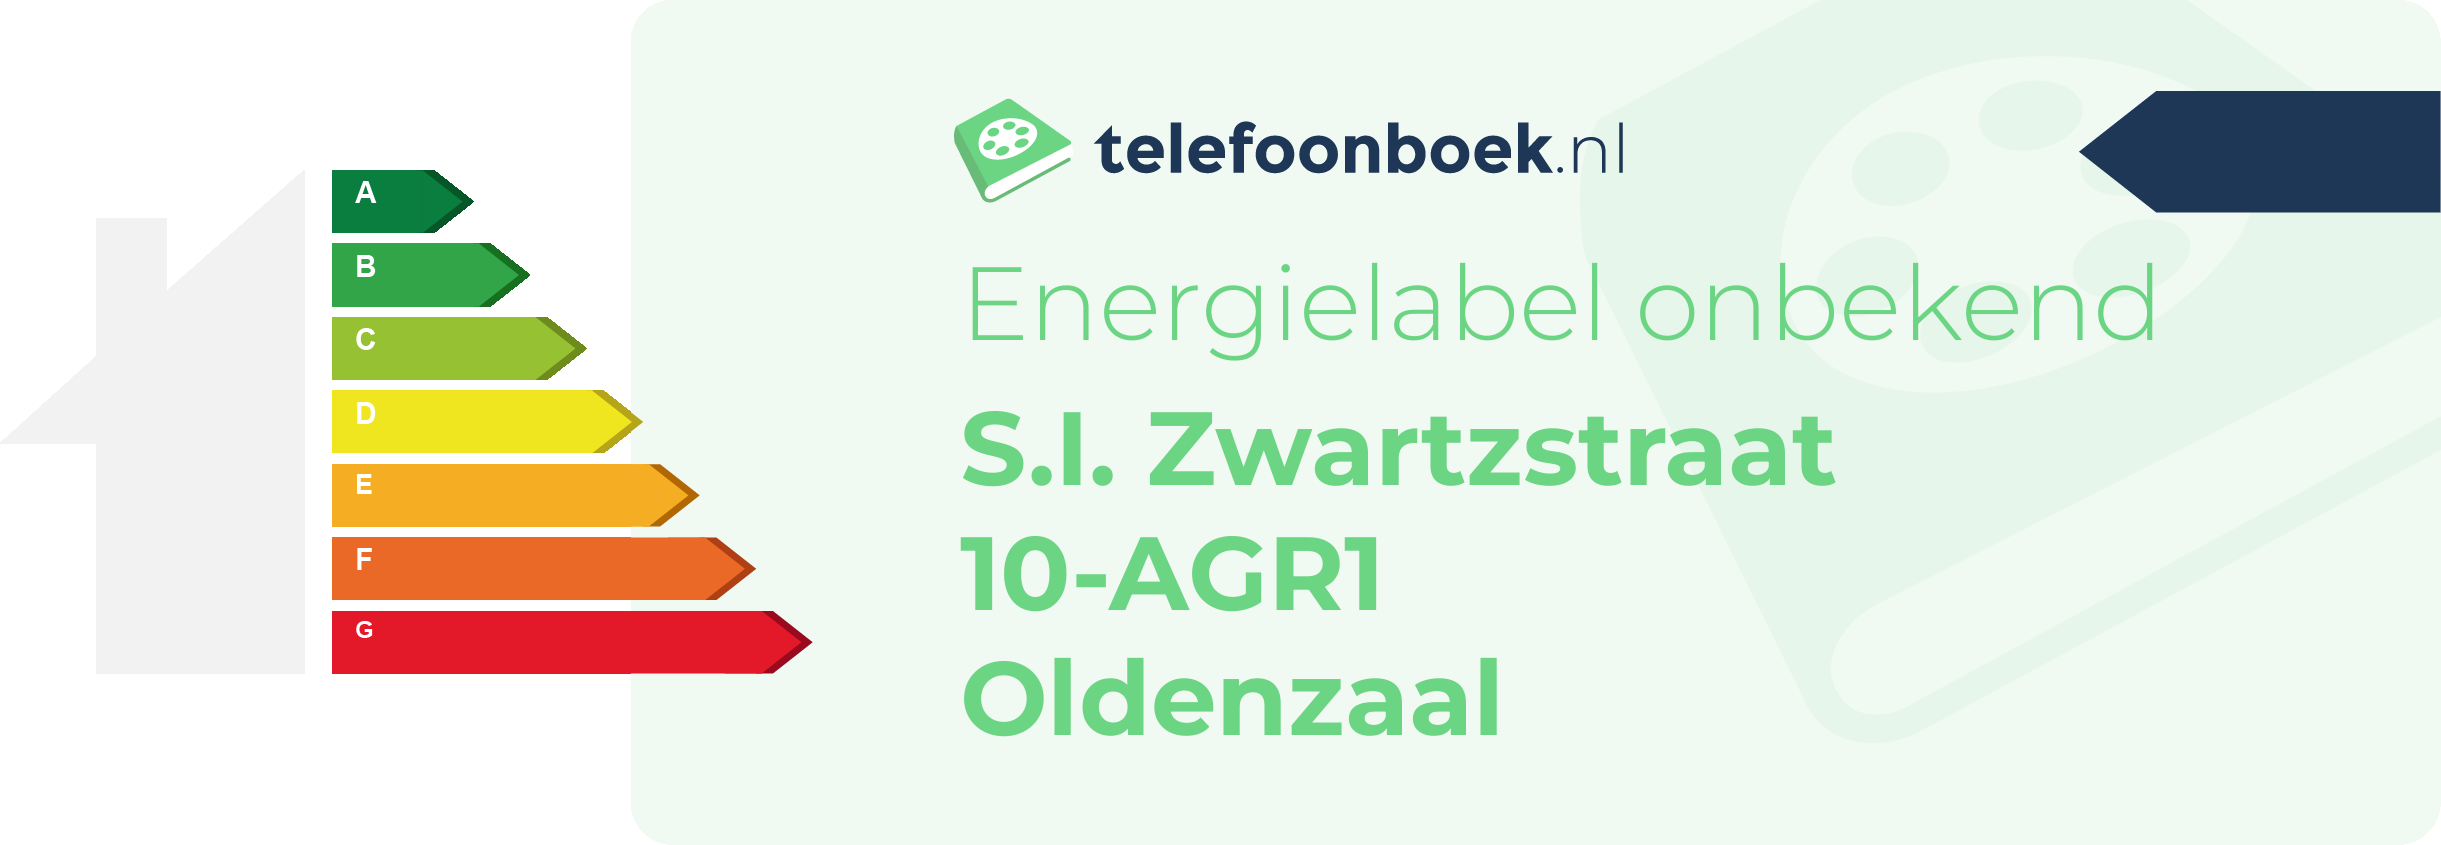 Energielabel S.I. Zwartzstraat 10-AGR1 Oldenzaal